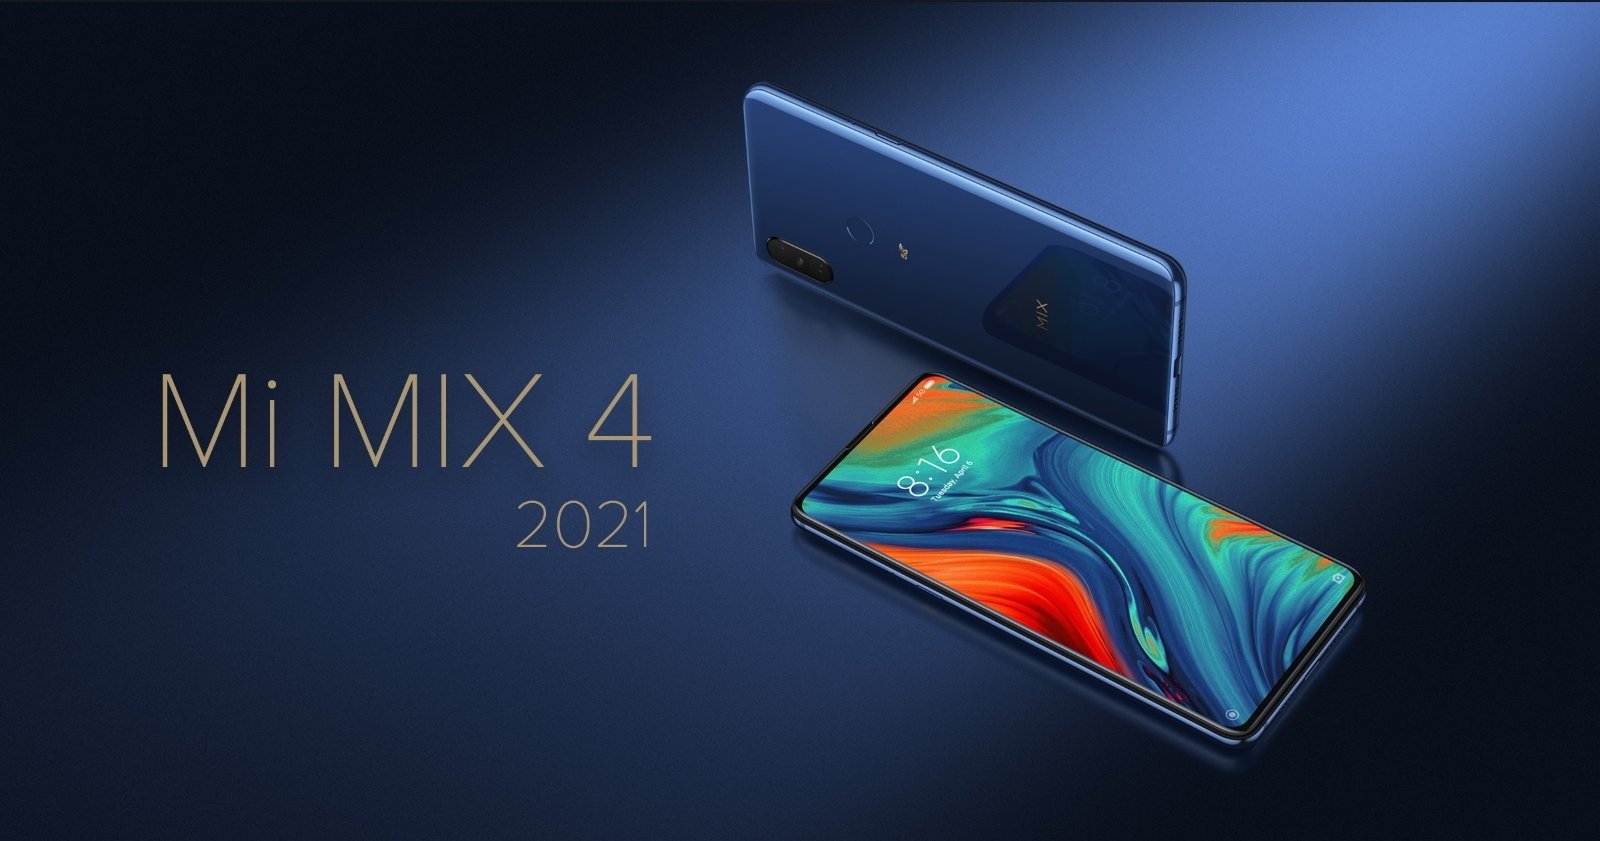 Xiaomi Mi Mix 4 in 2021